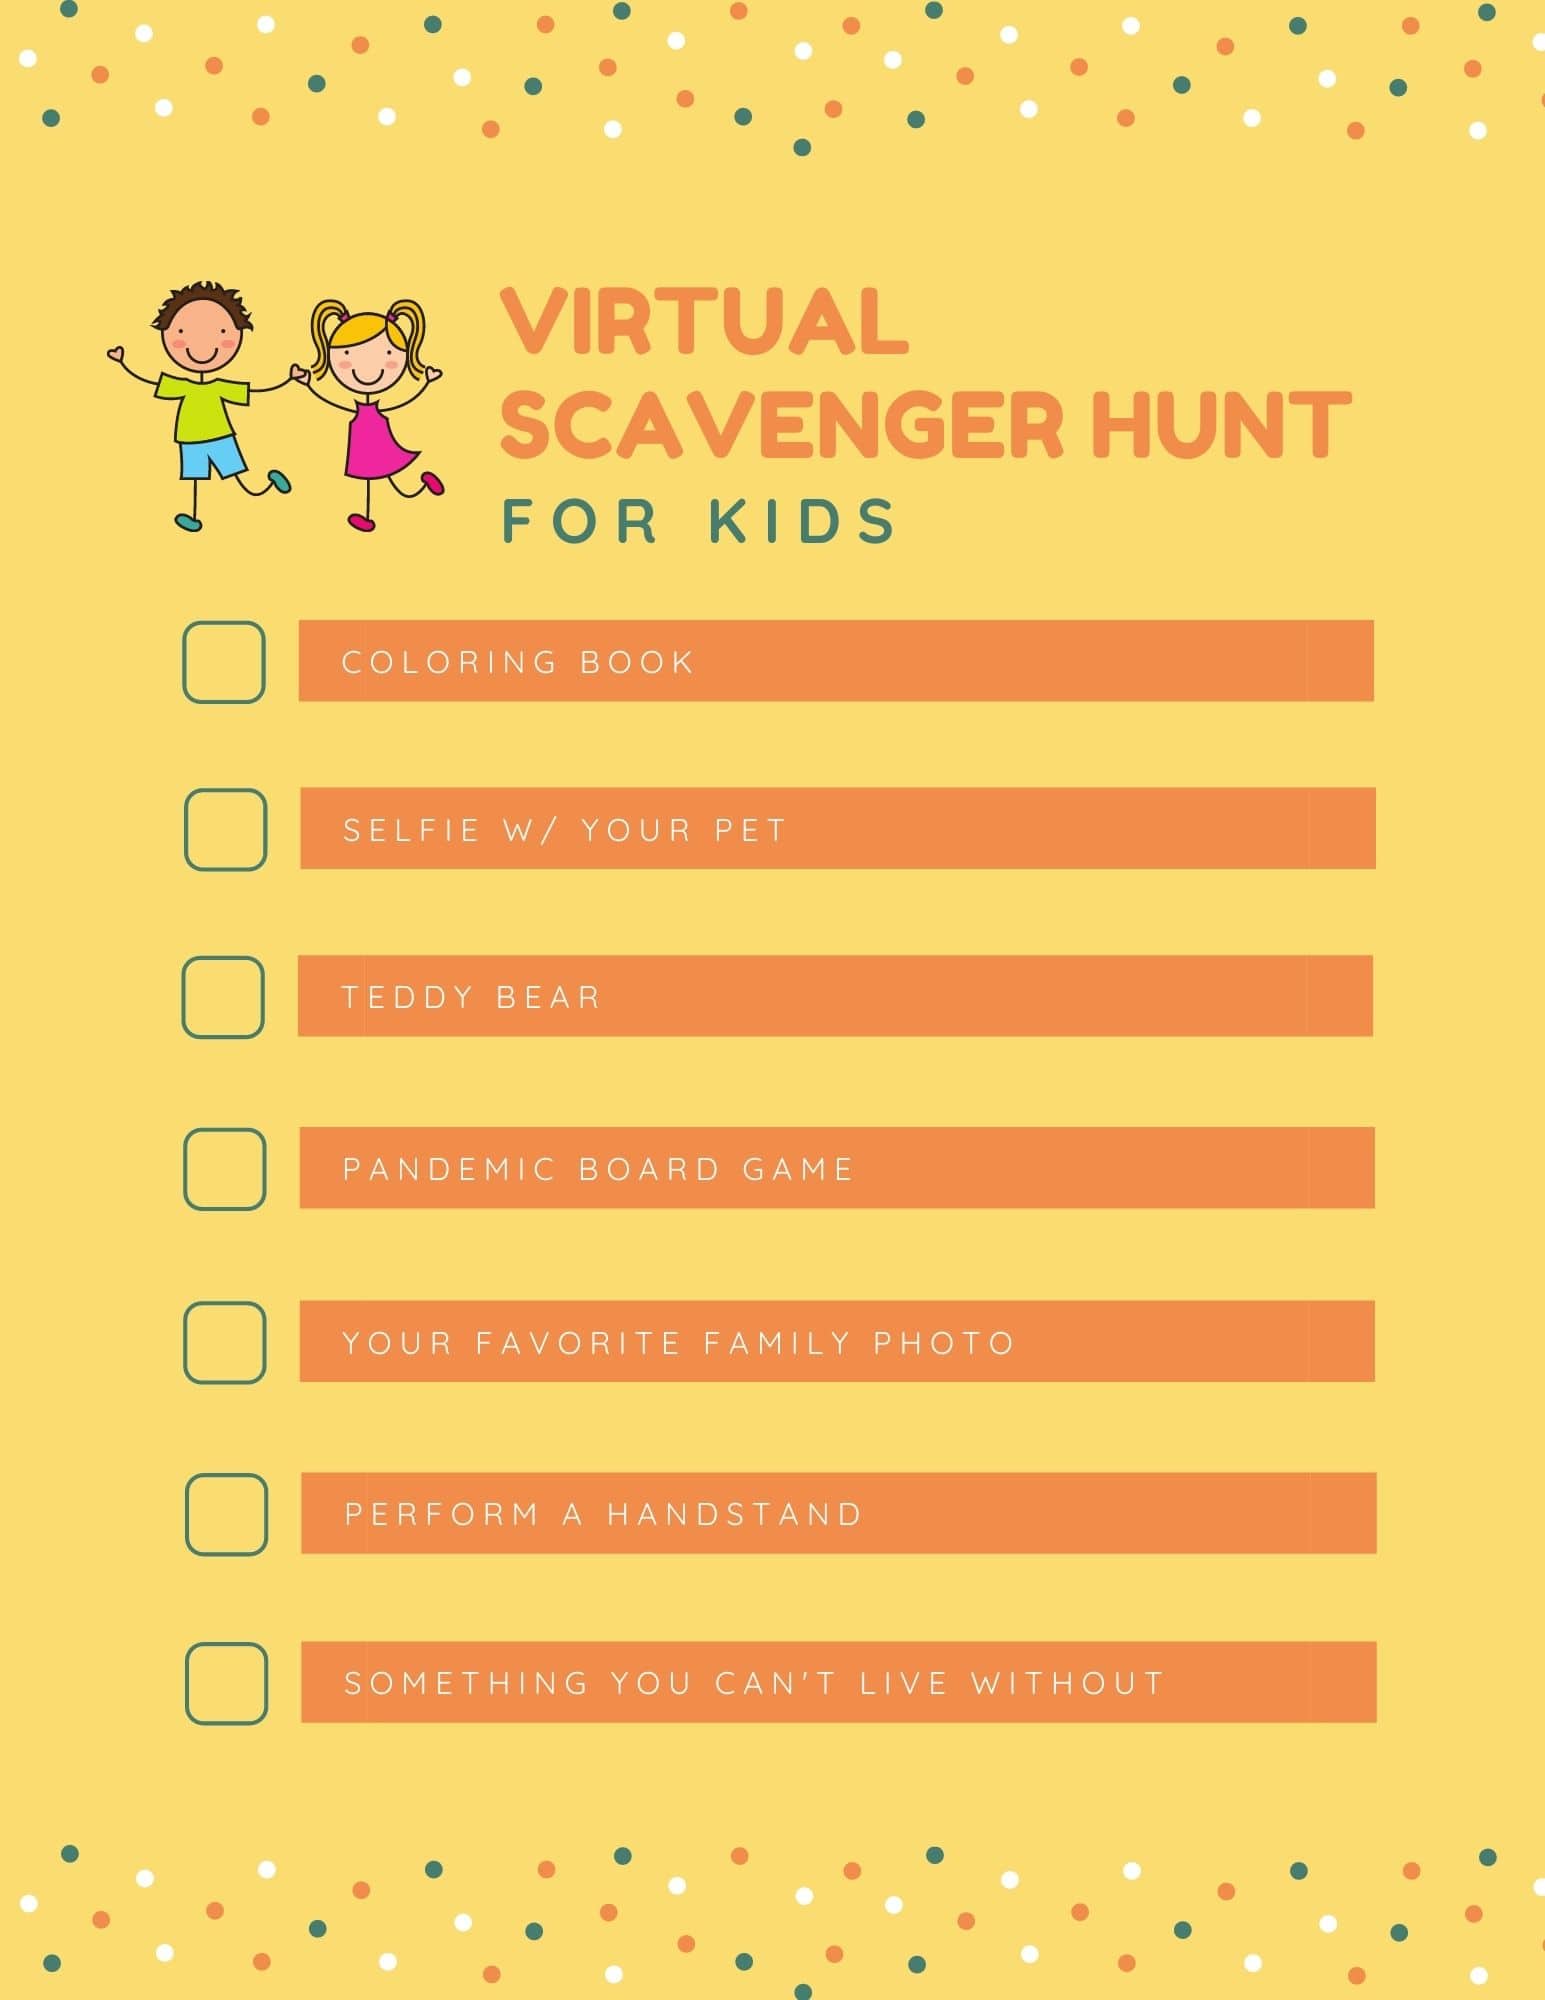 Virtual scavenger hunt for kids